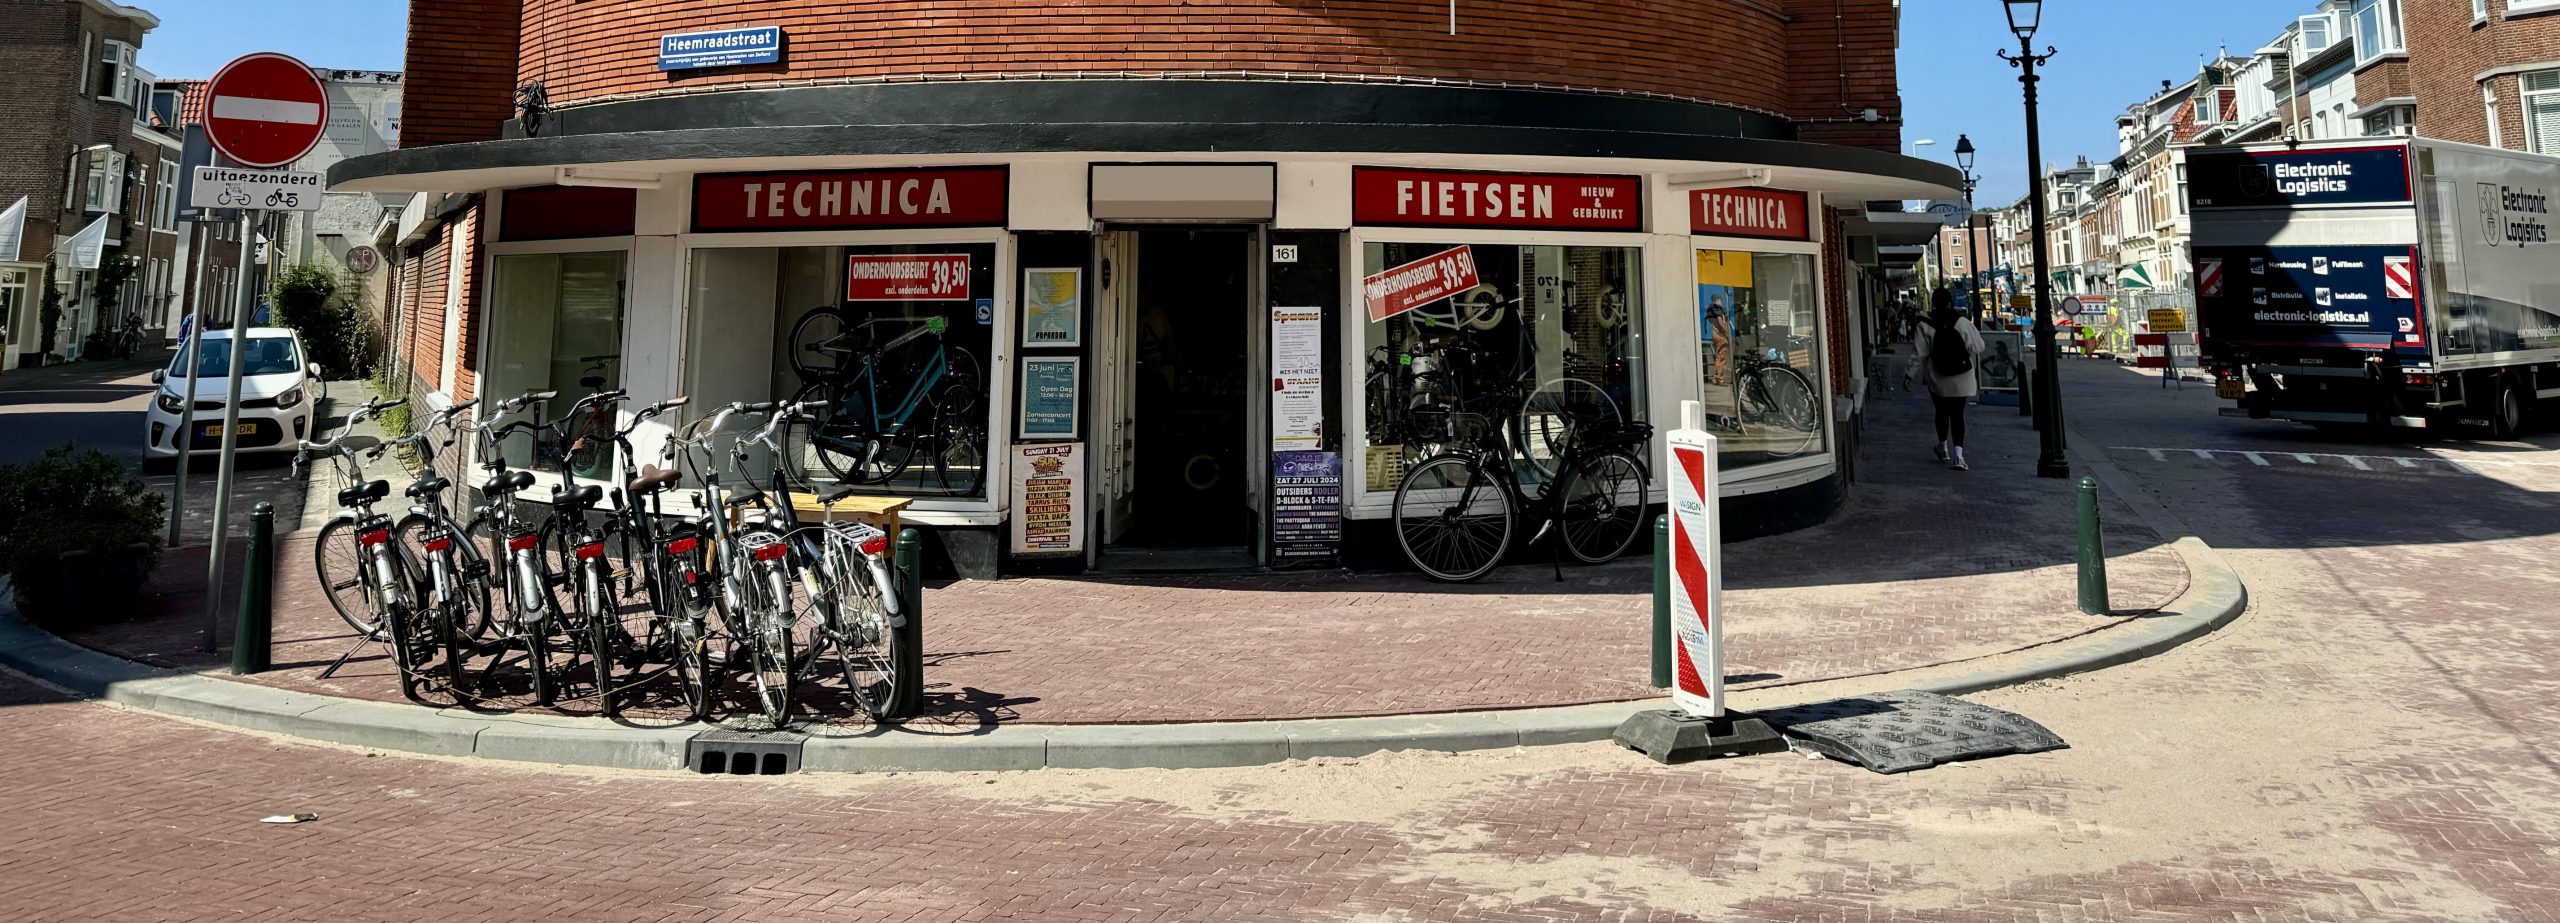 Technica fietsenwinkel Scheveningen